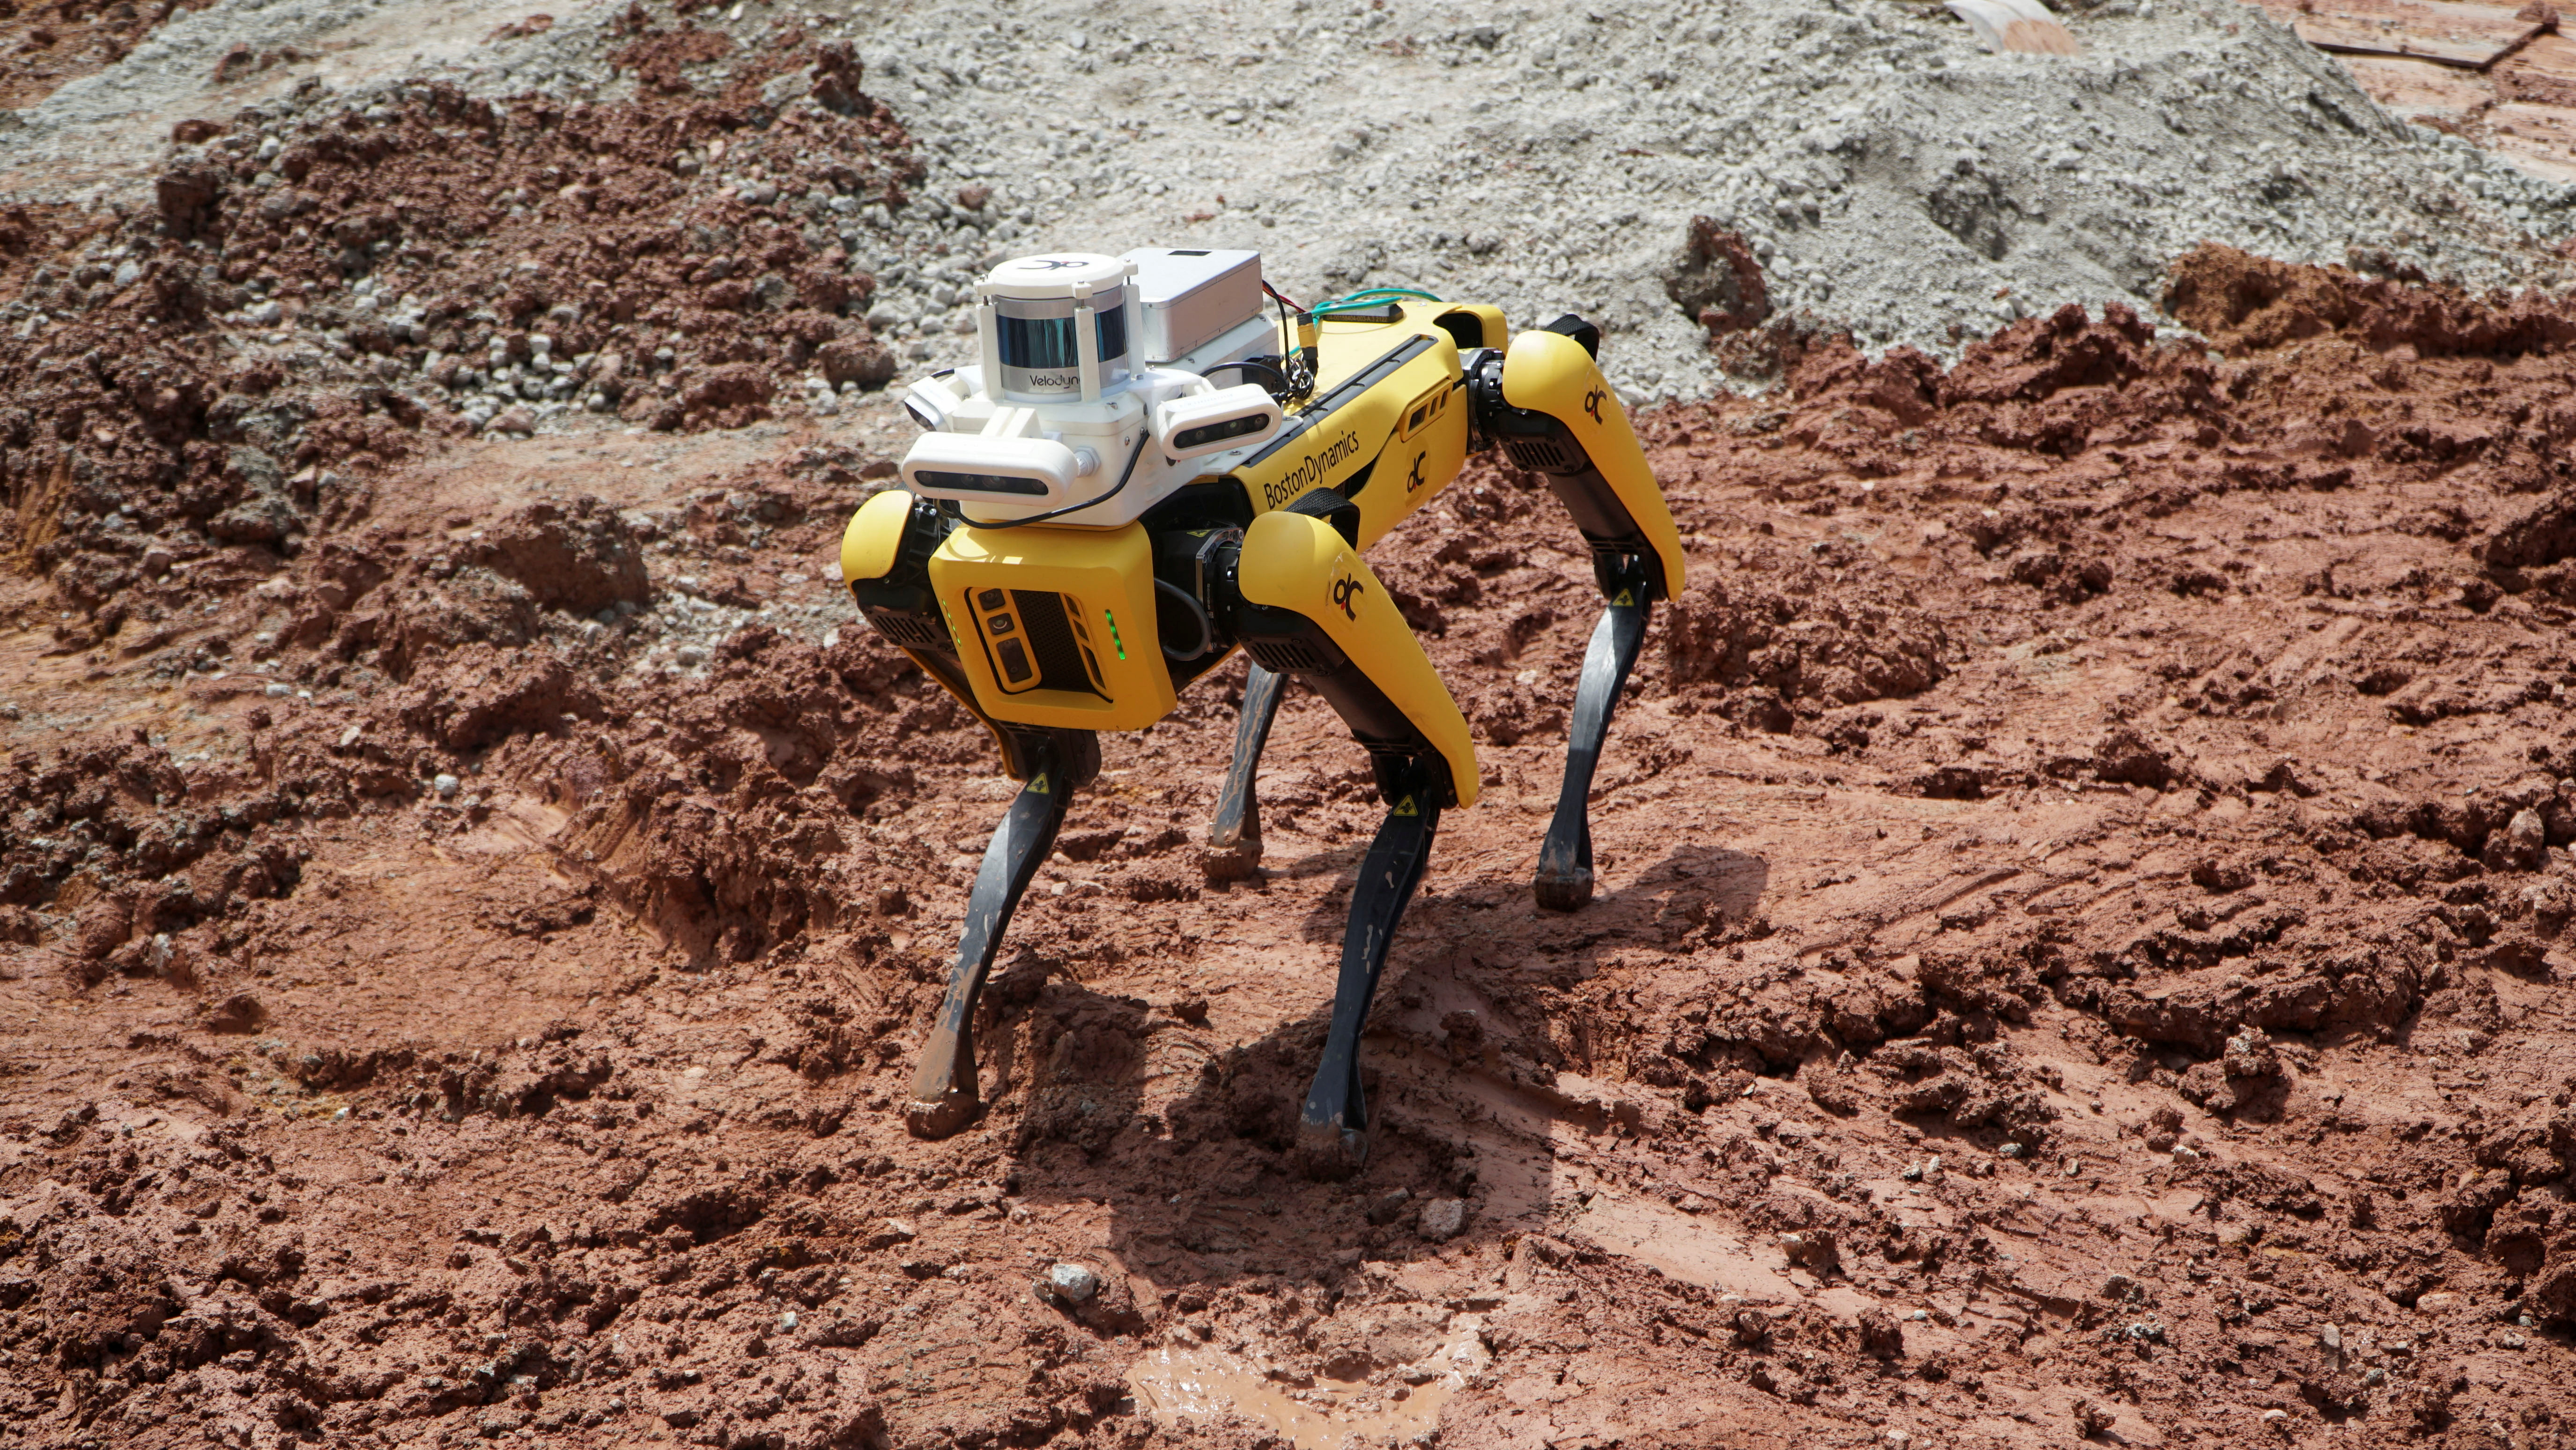 Робот-собака, созданная компанией Boston Dynamics, принадлежащей Hyundai, используется компанией Gammon Construction Ltd для сканирования строительной площадки, чтобы руководители могли проверить ход работ на острове Сентоза.